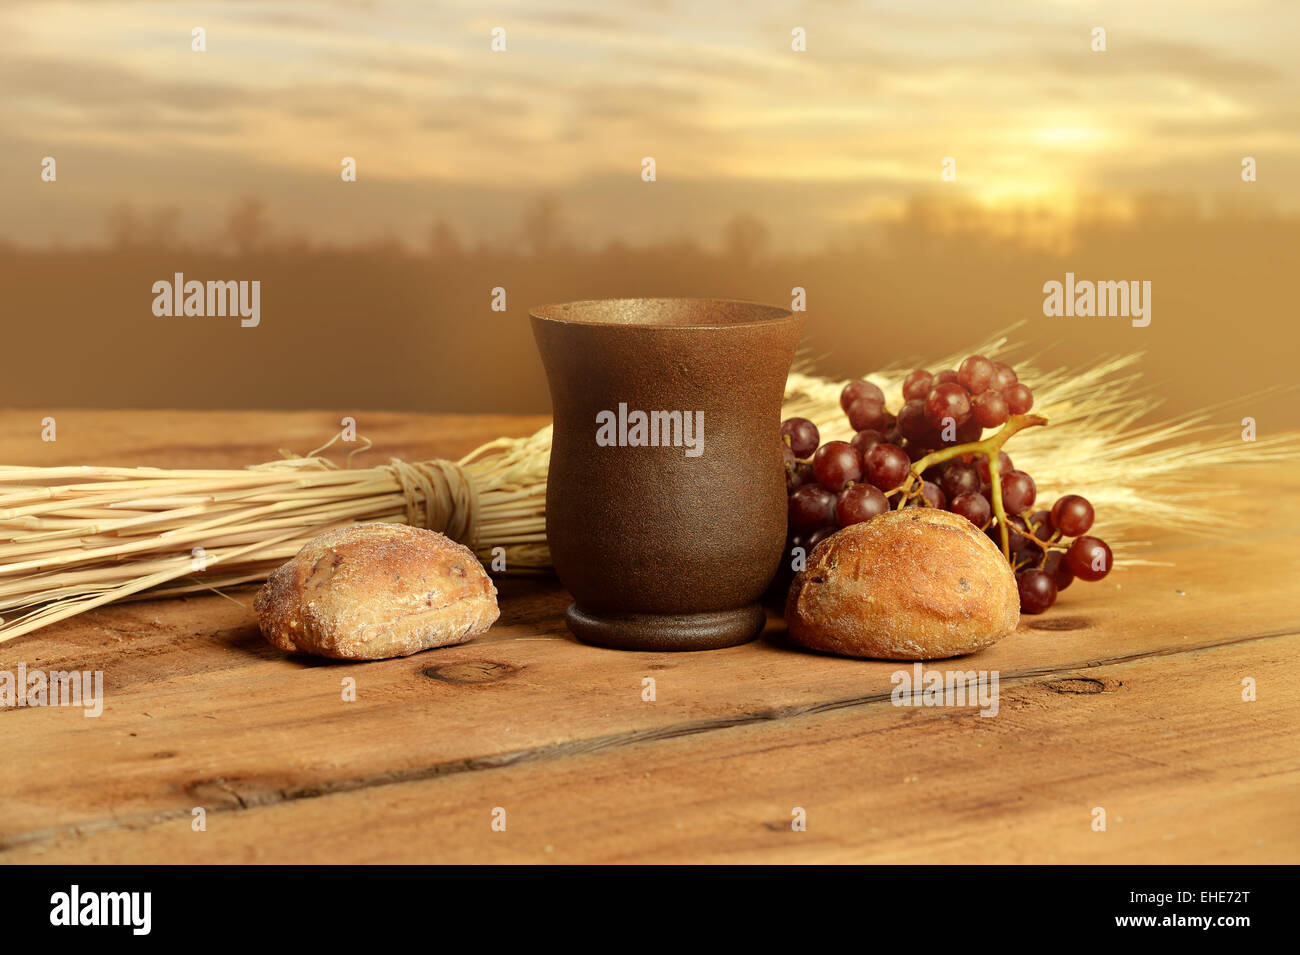 Coppa di vino, pane. L'uva e il grano su vintage tabella con il caldo tramonto in background Foto Stock